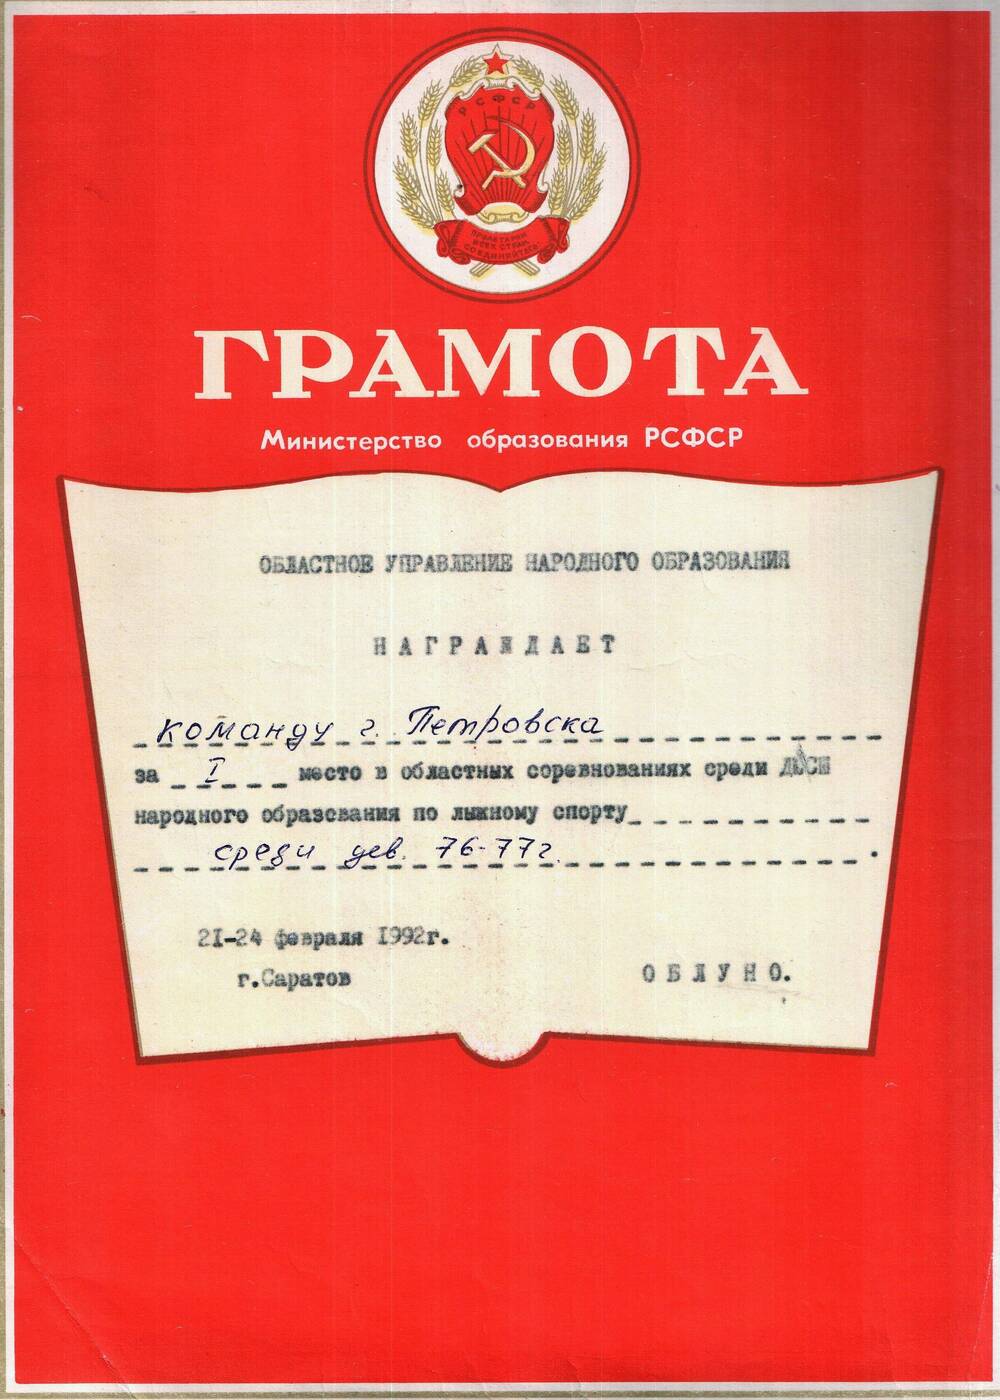 Грамота областного управления народного образования 21-24 февраля 1992 г. г.Саратов.